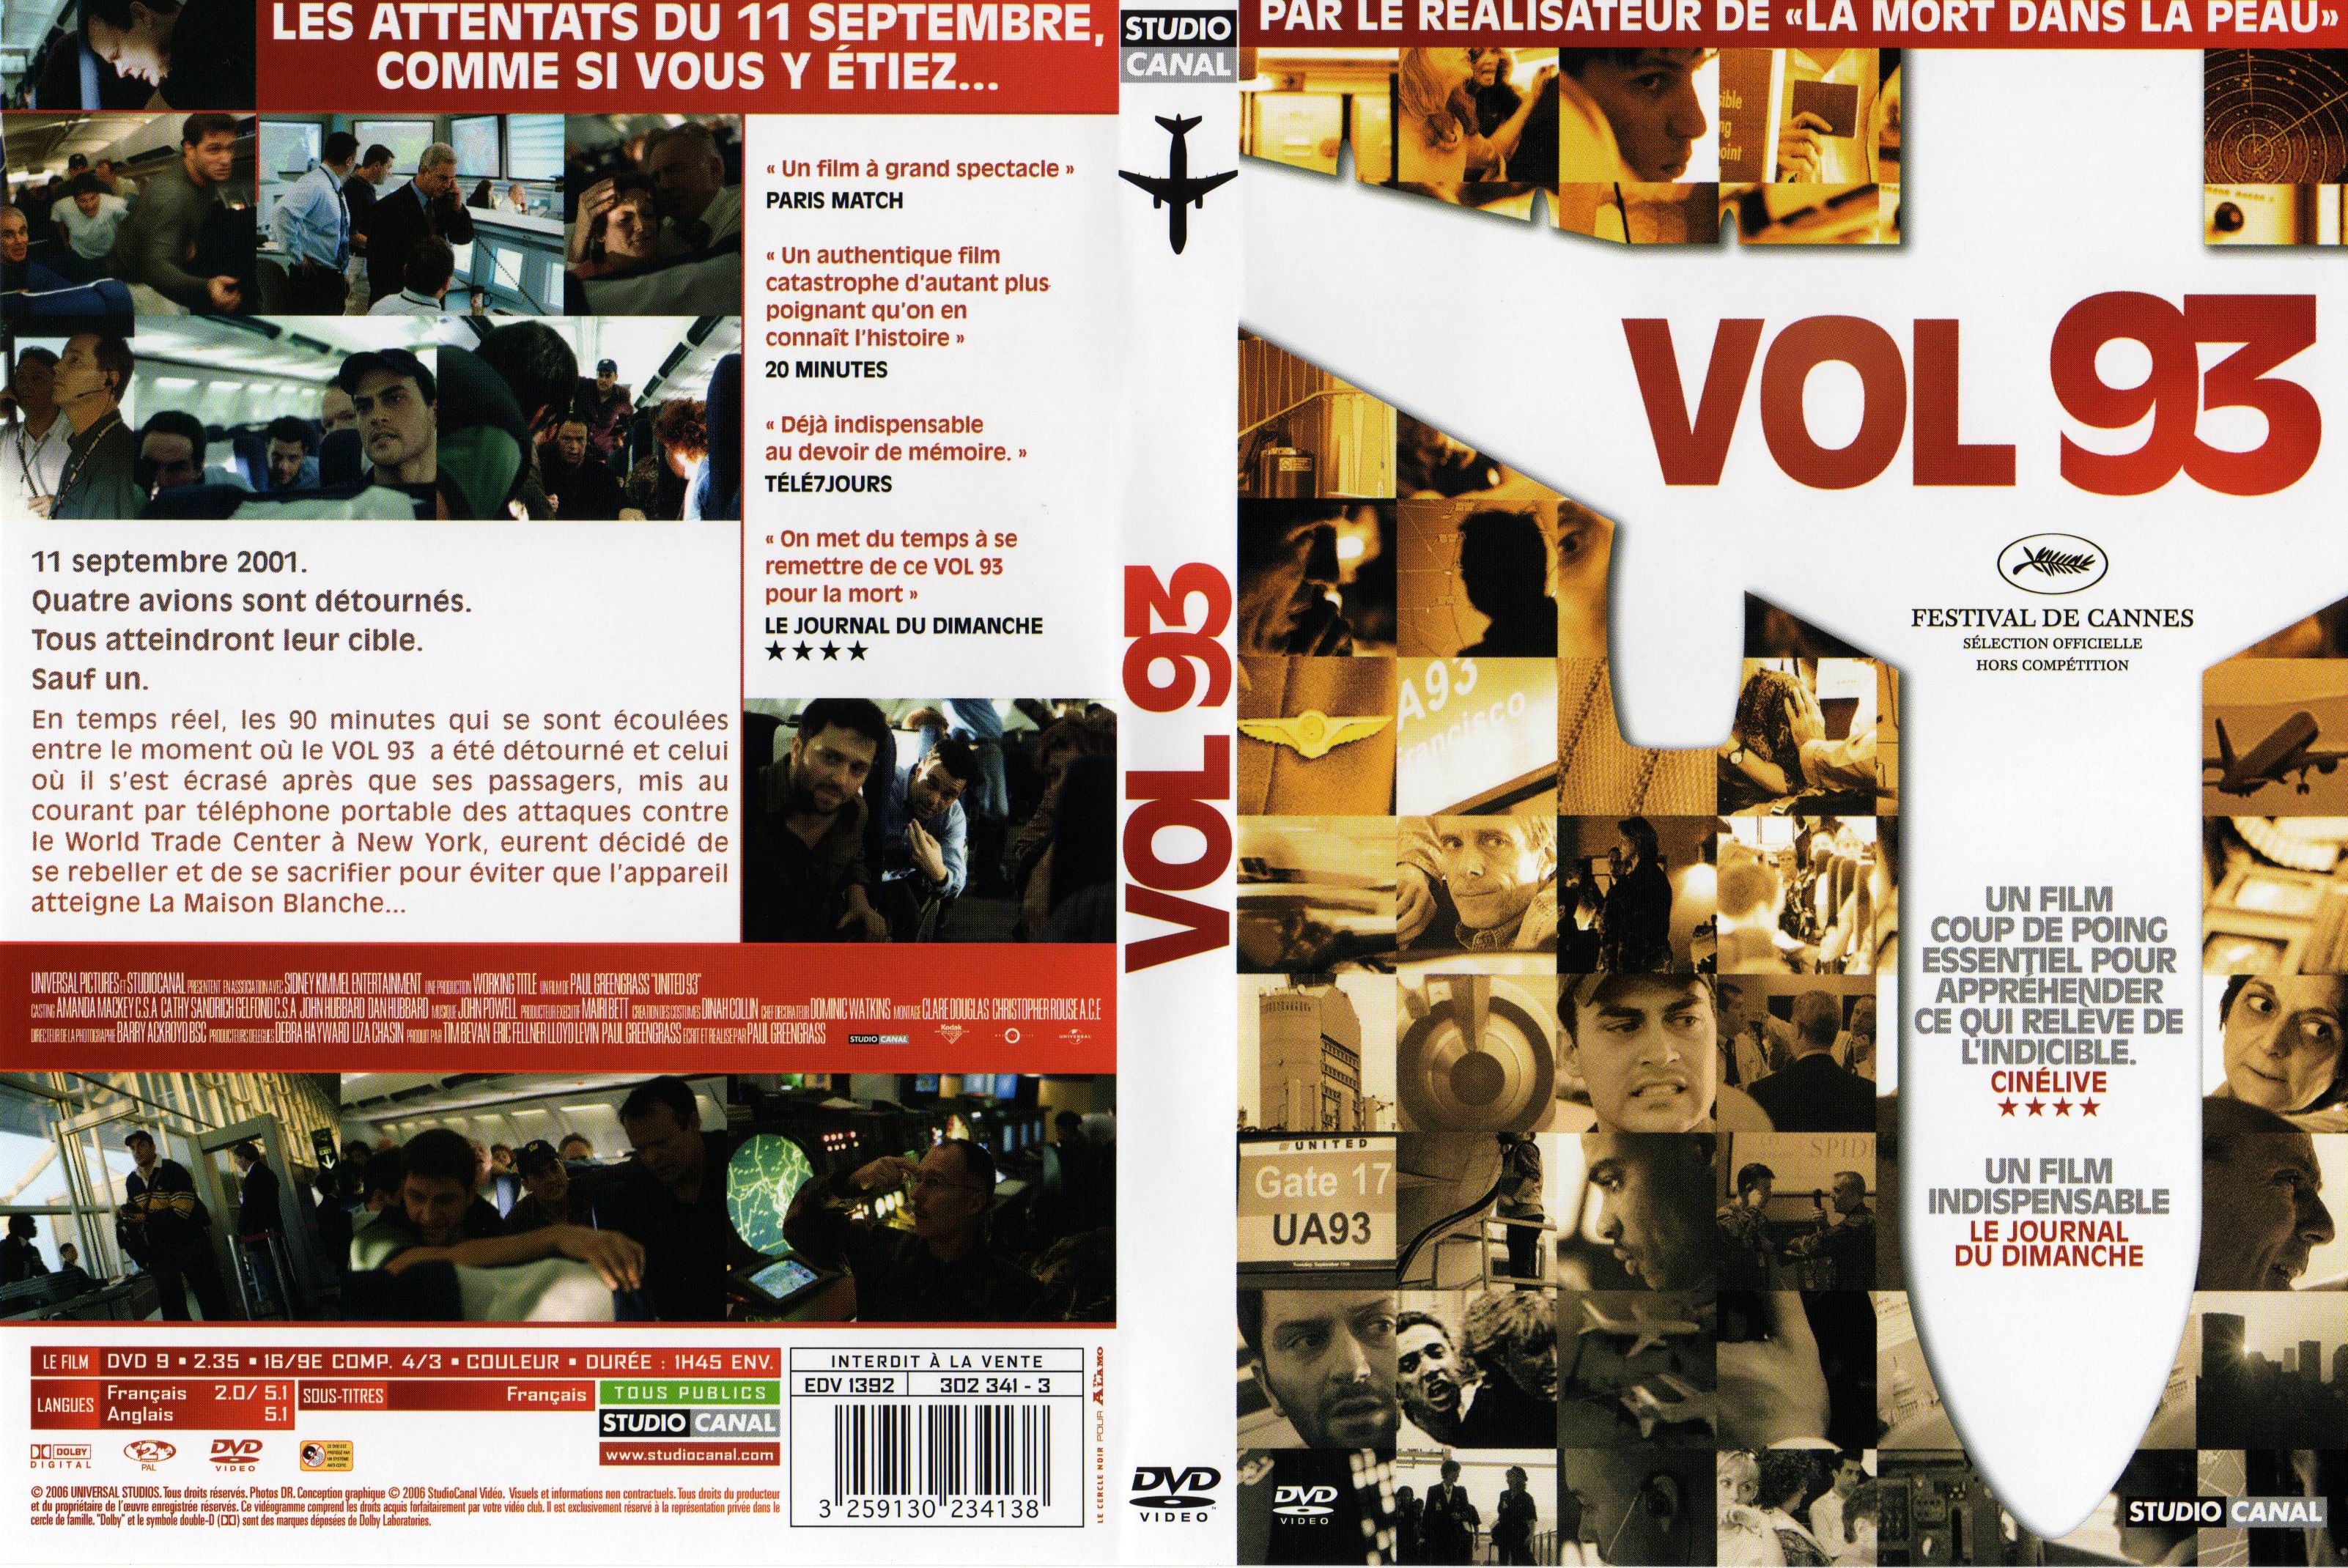 Jaquette DVD Vol 93 v2